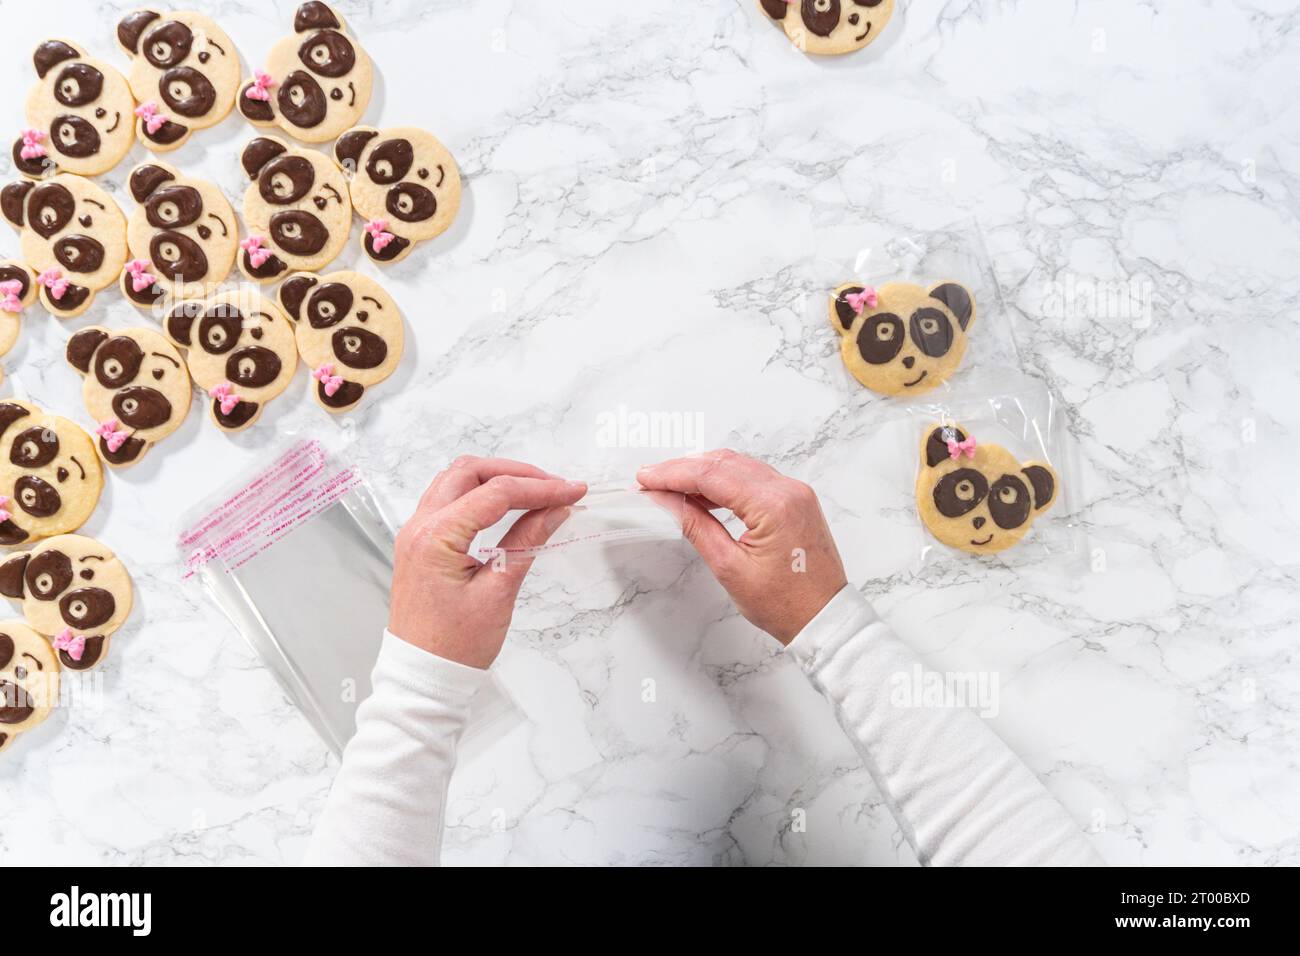 Biscotti frollini a forma di panda con glassa al cioccolato Foto Stock